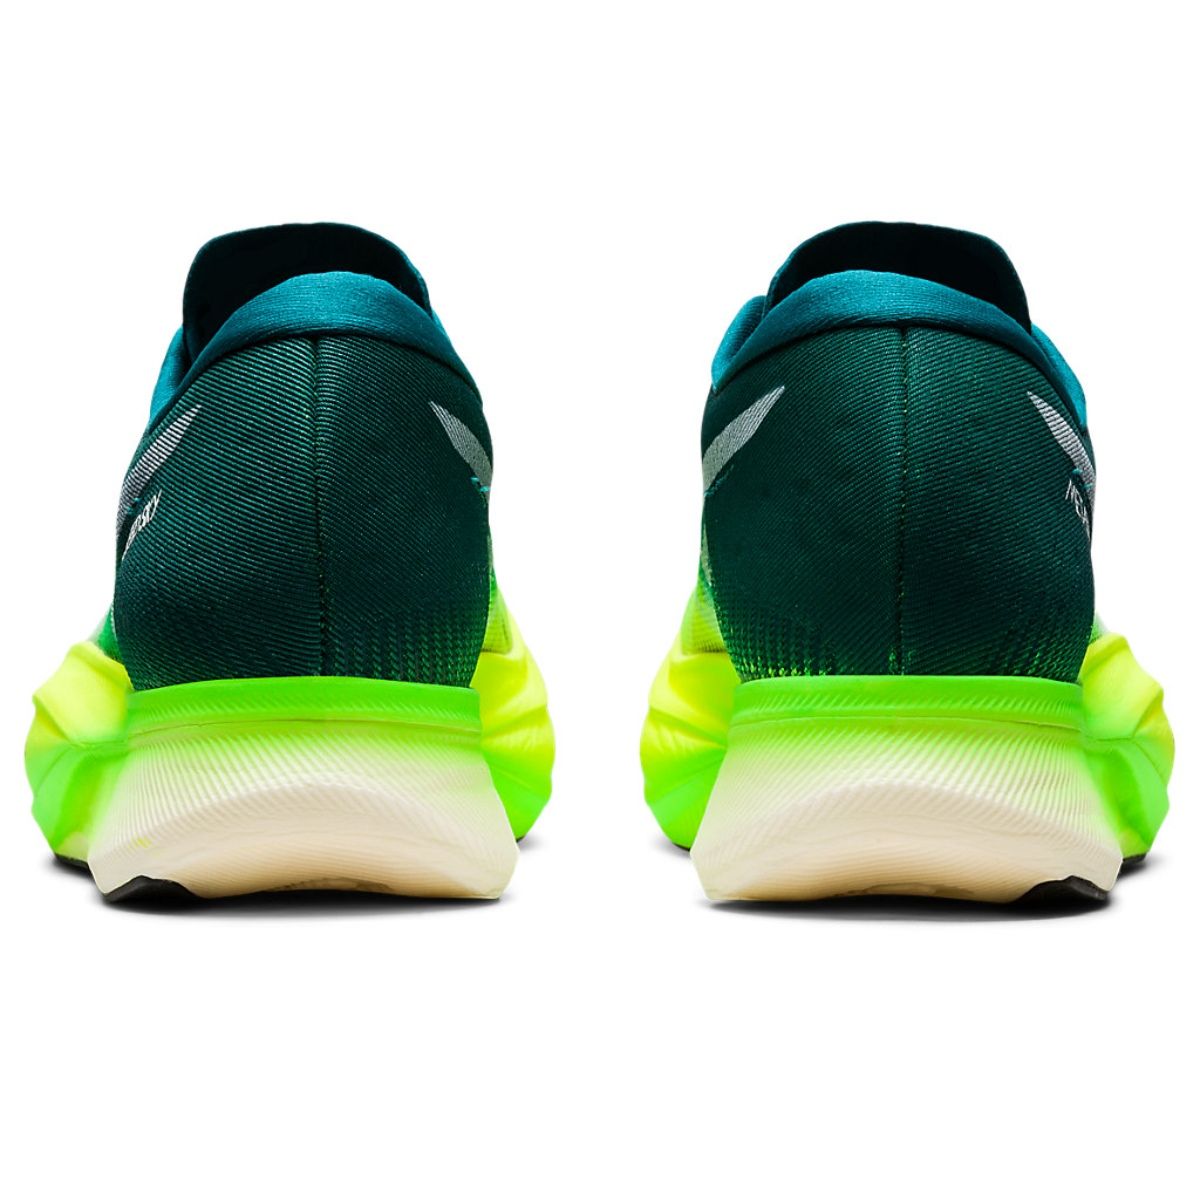 Asics Meta speed Sky-Green Unisex Running Shoes (UK 12): Buy Asics Meta ...